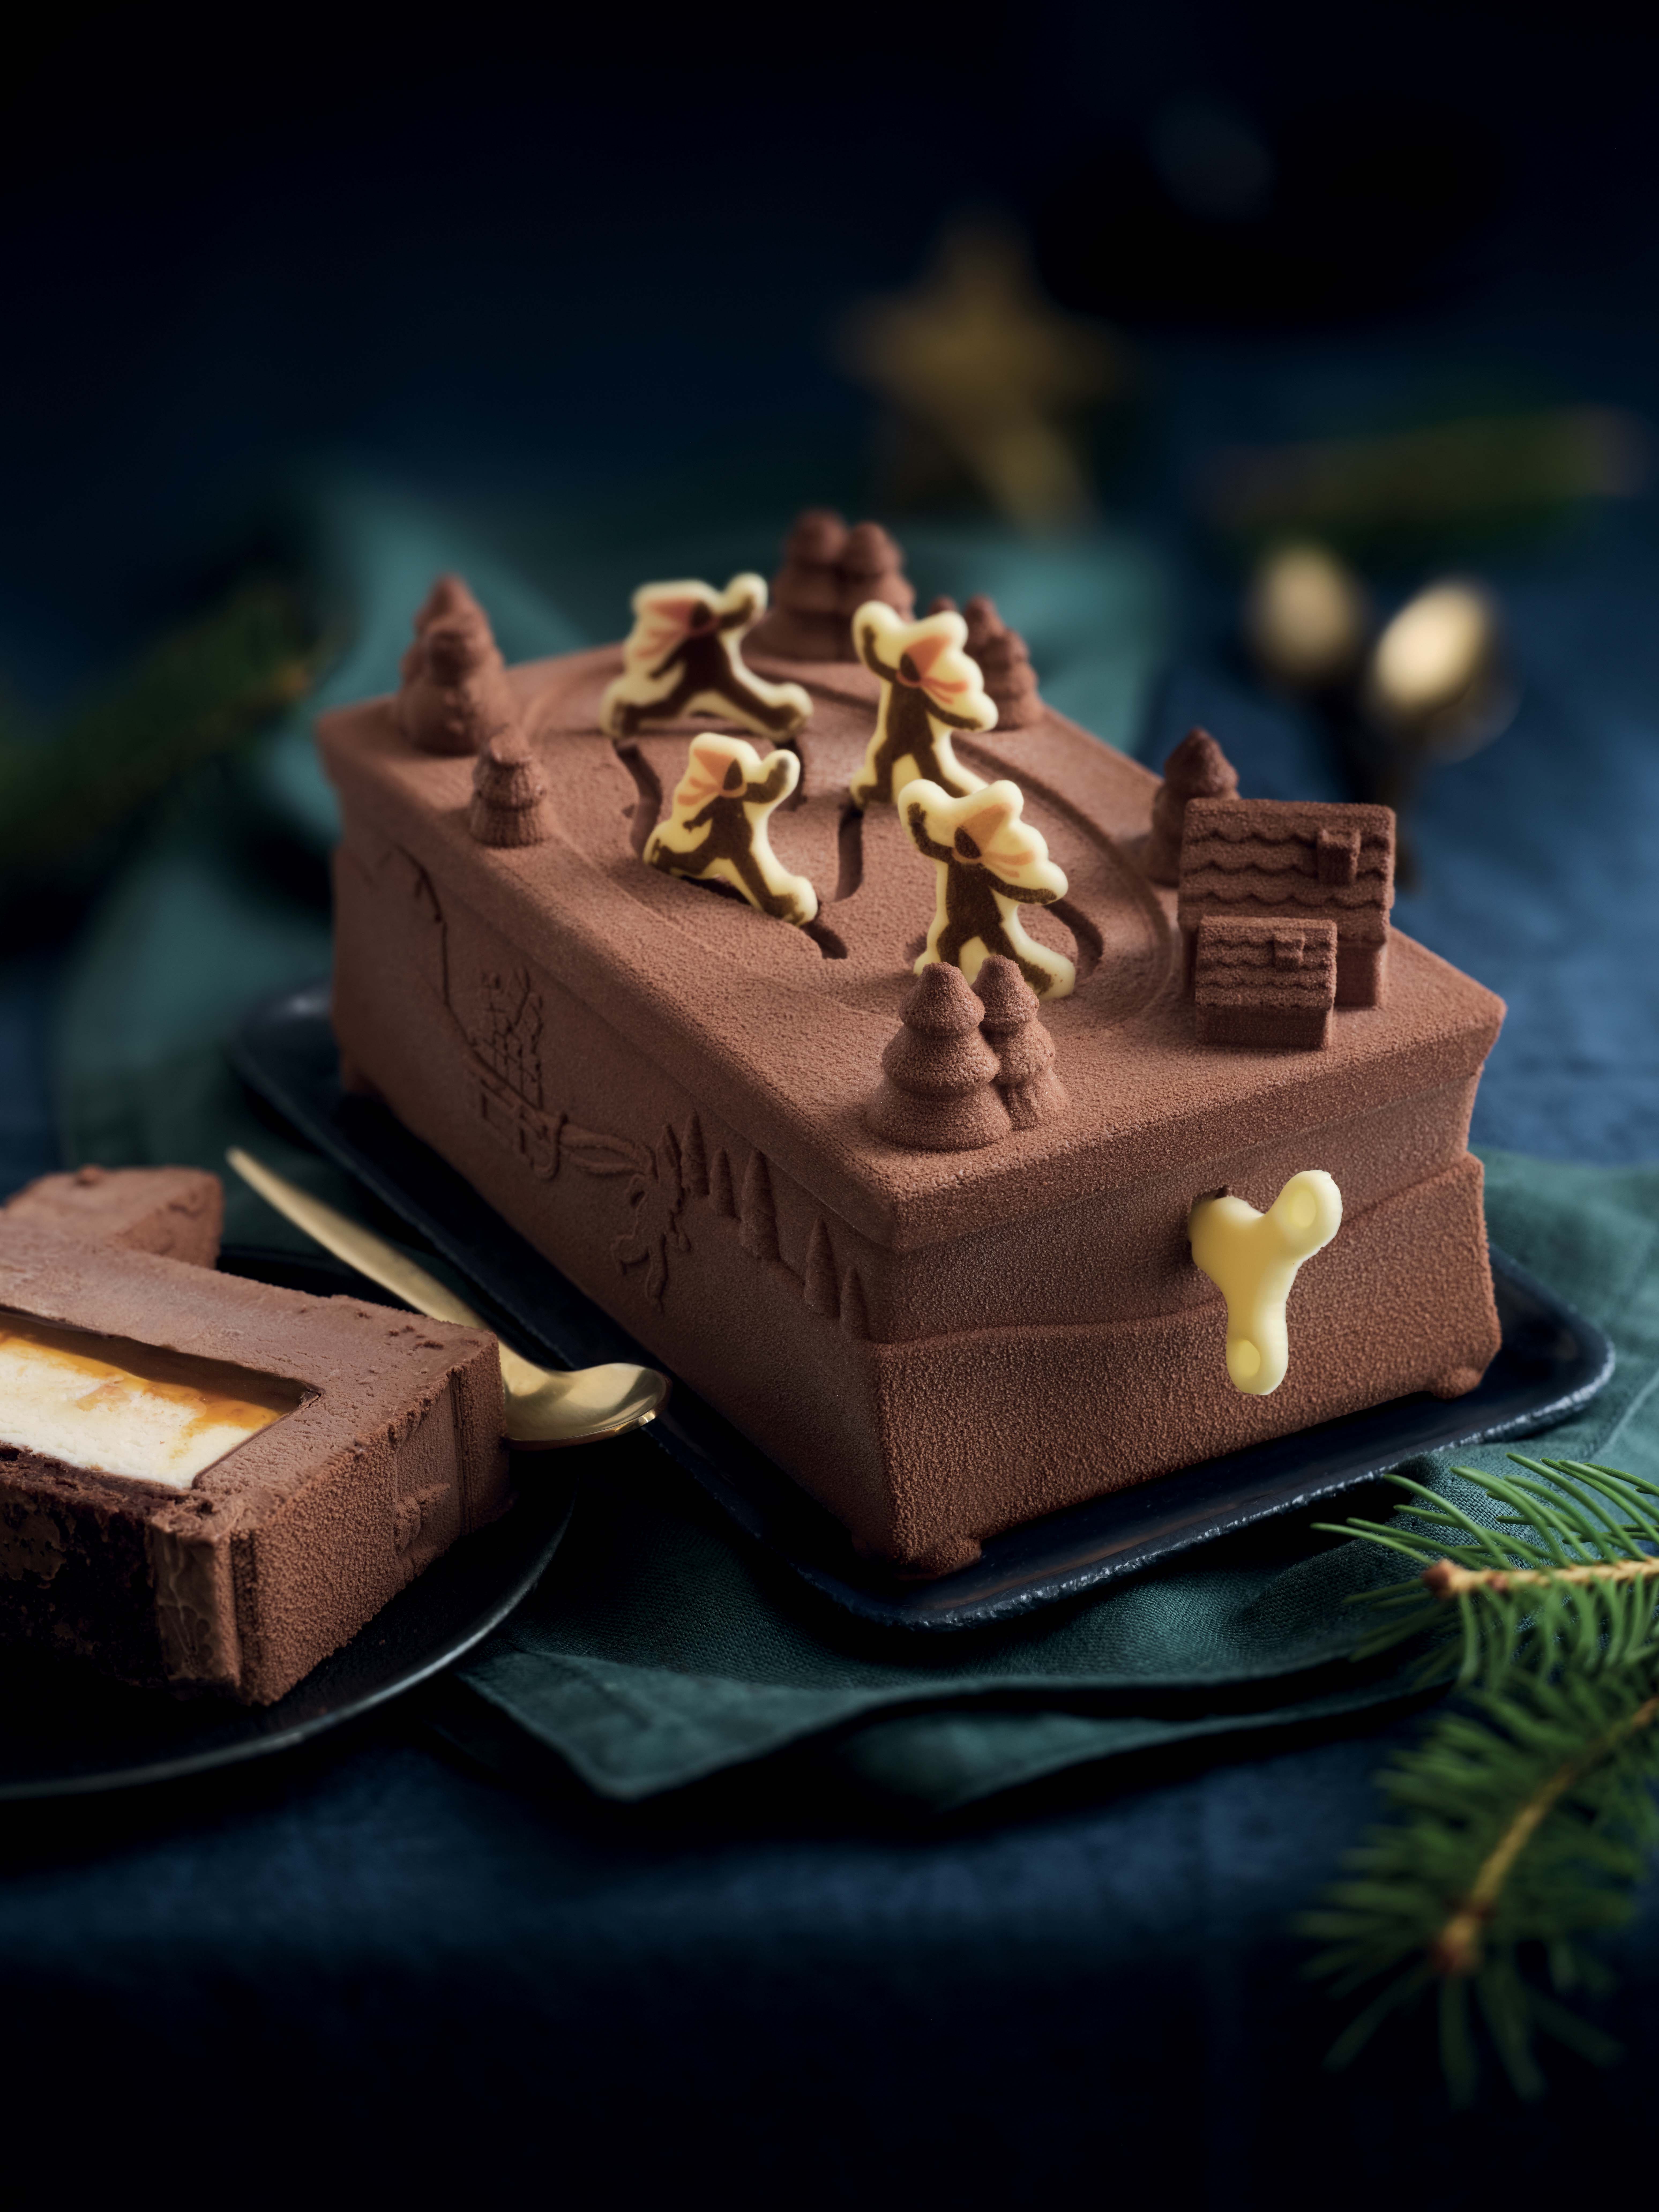 Coffret Cadeau de Noël avec Ferrero Mon Chéri (avec 3 pièces) : :  Epicerie